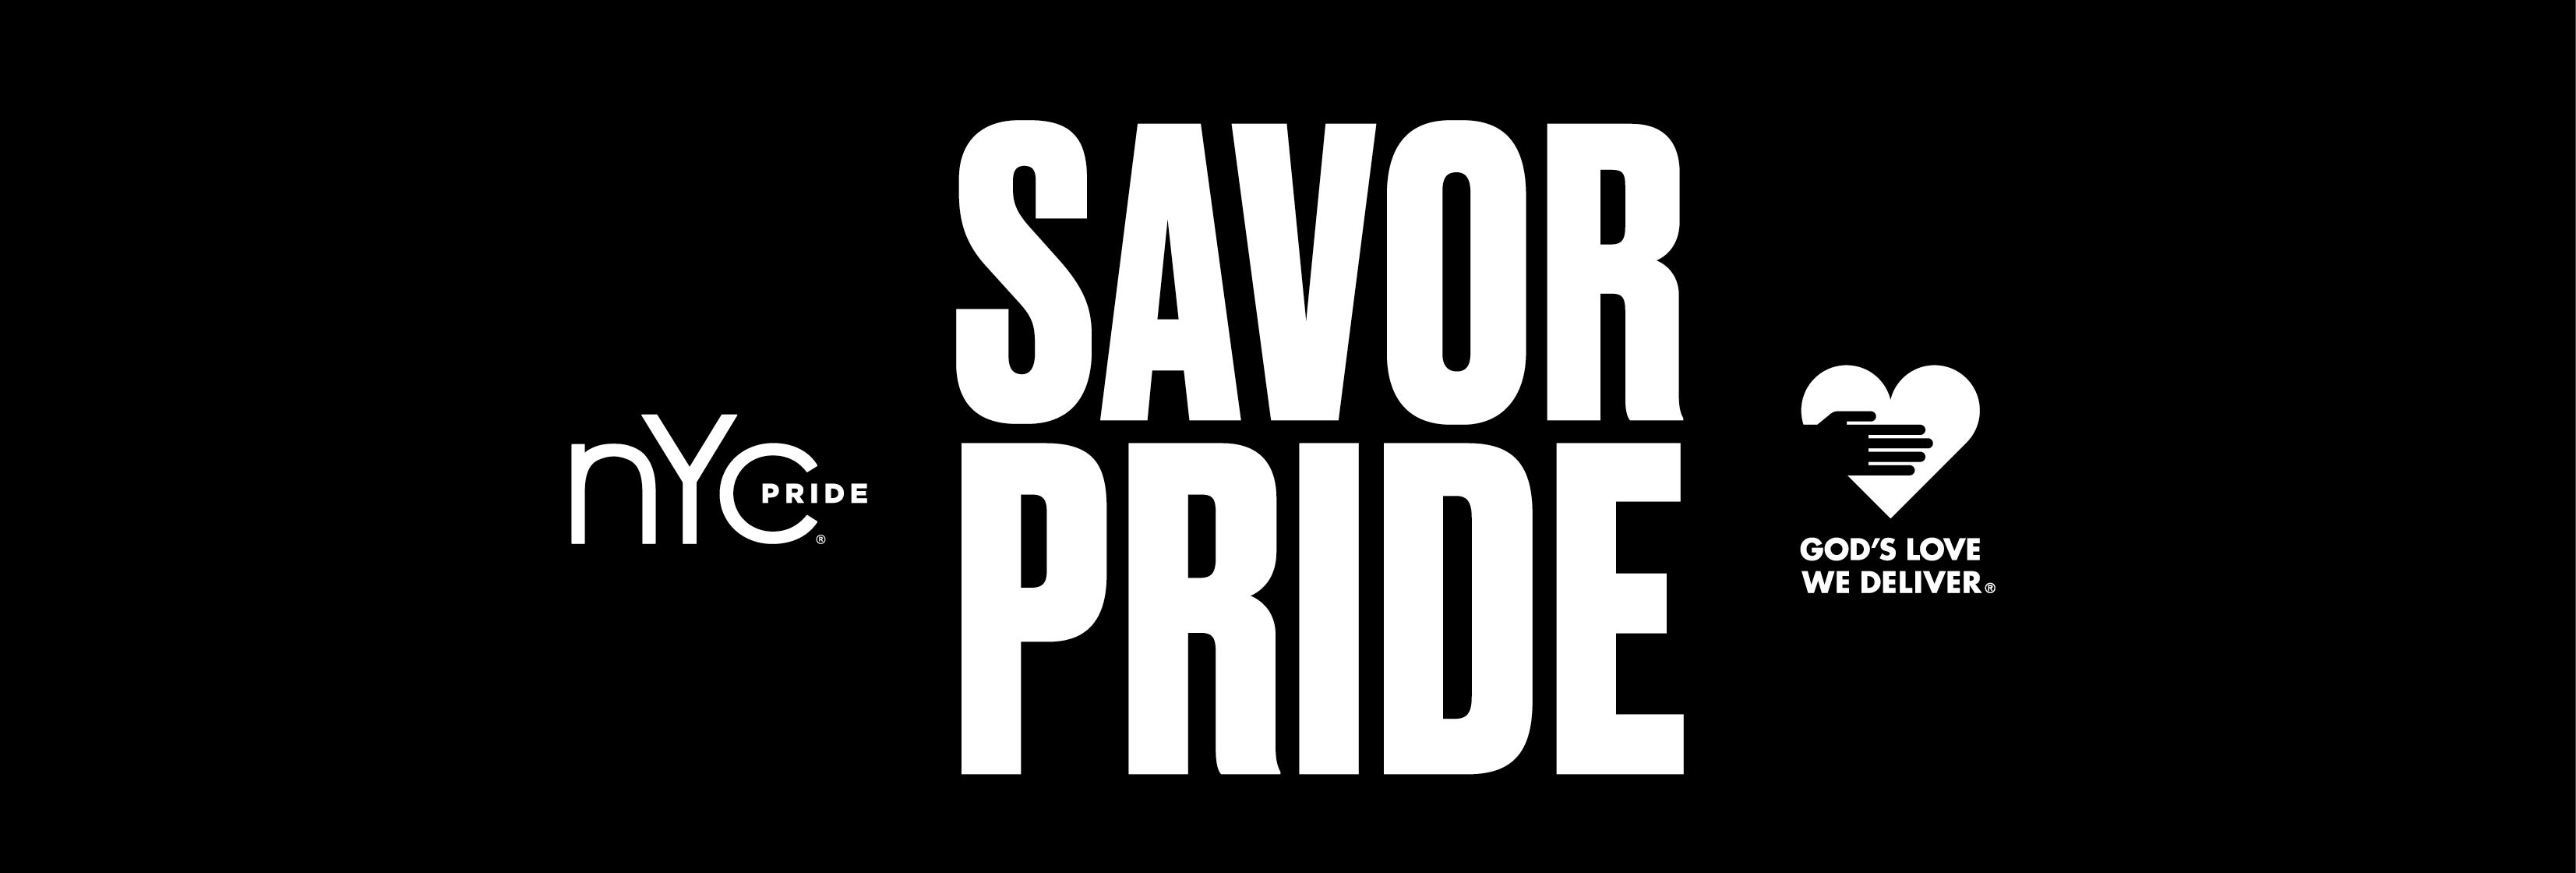 Savor Pride